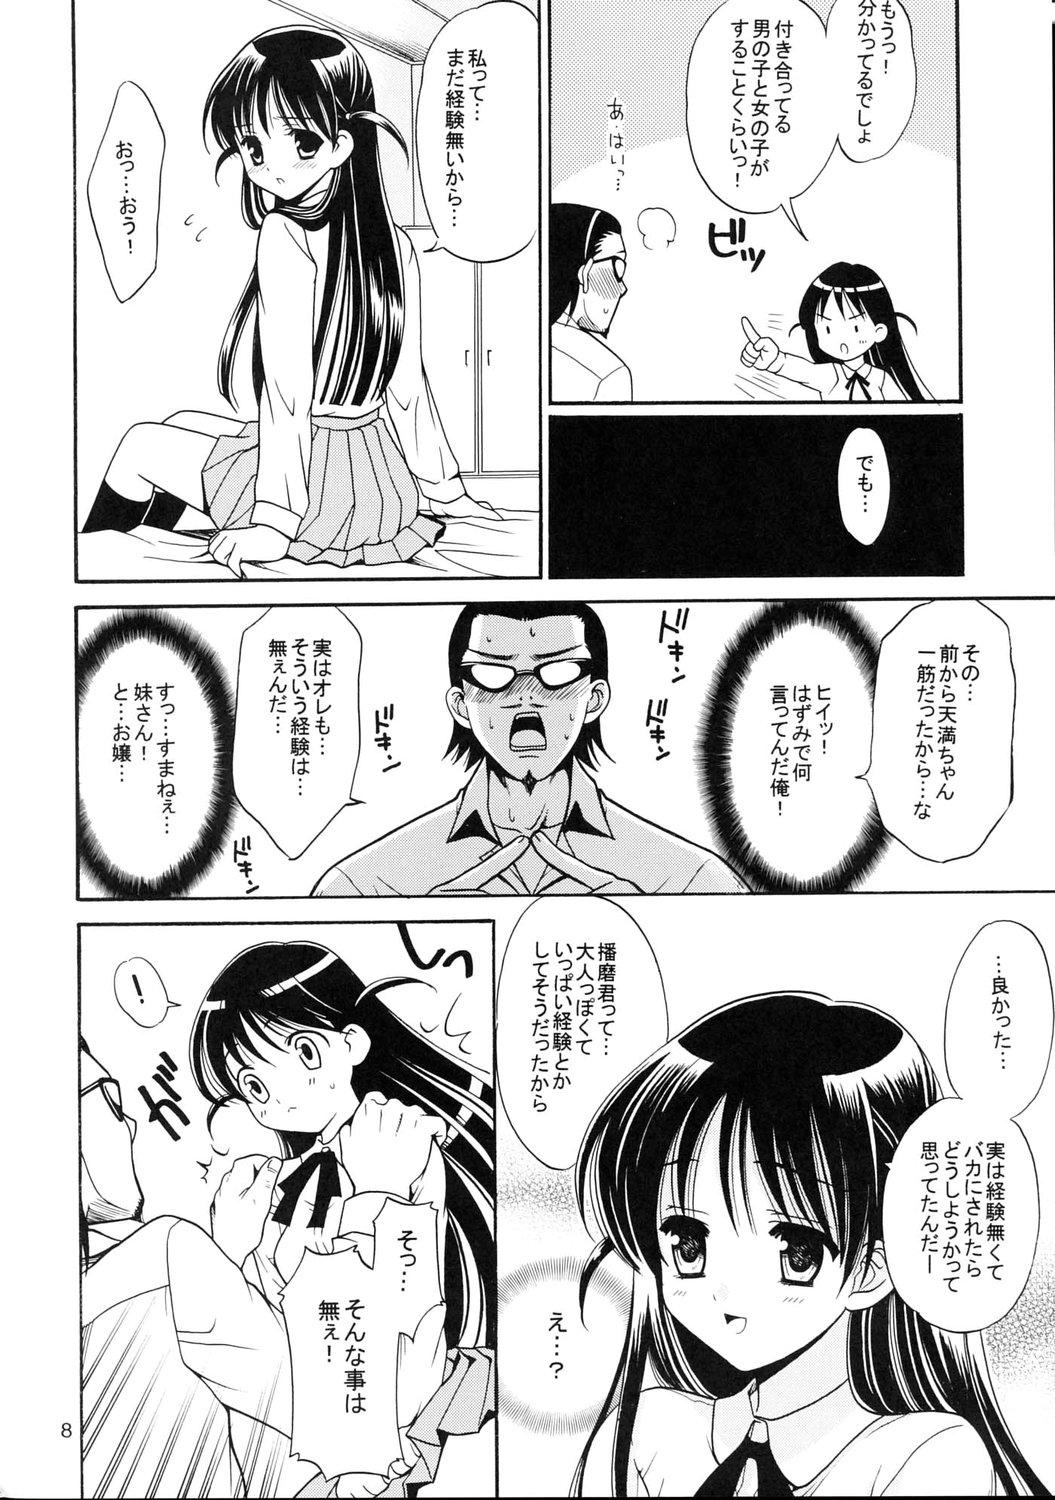 Uncensored Hige-seito Harima! 3 - School rumble Scissoring - Page 7